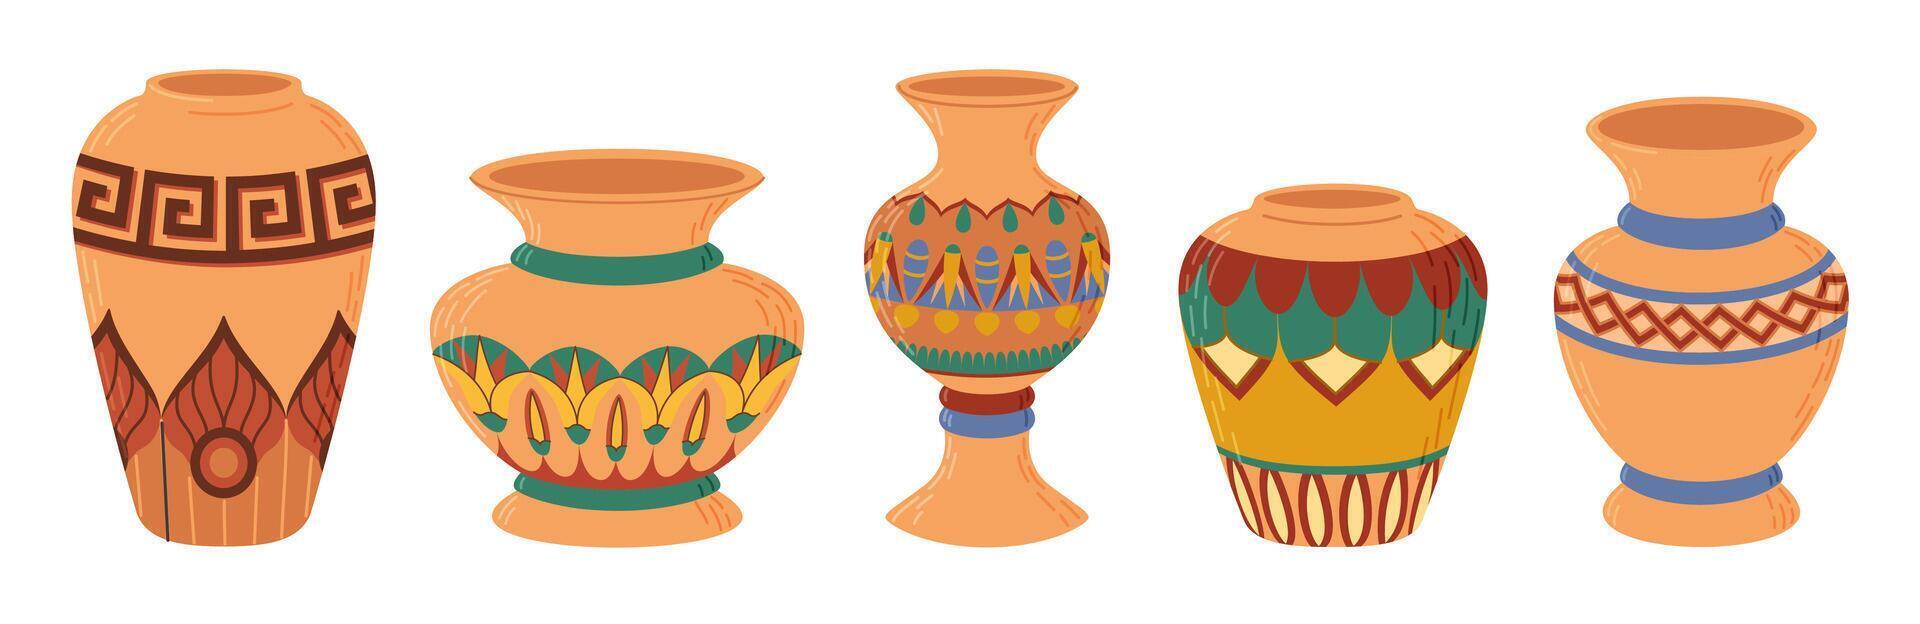 colori cerâmico vasos definir. porcelana vaso para flores, Antiguidade cerâmica, floral e abstrato padrões. vaso cerâmica para decoração. na moda plano estilo isolado em branco ilustração vetor